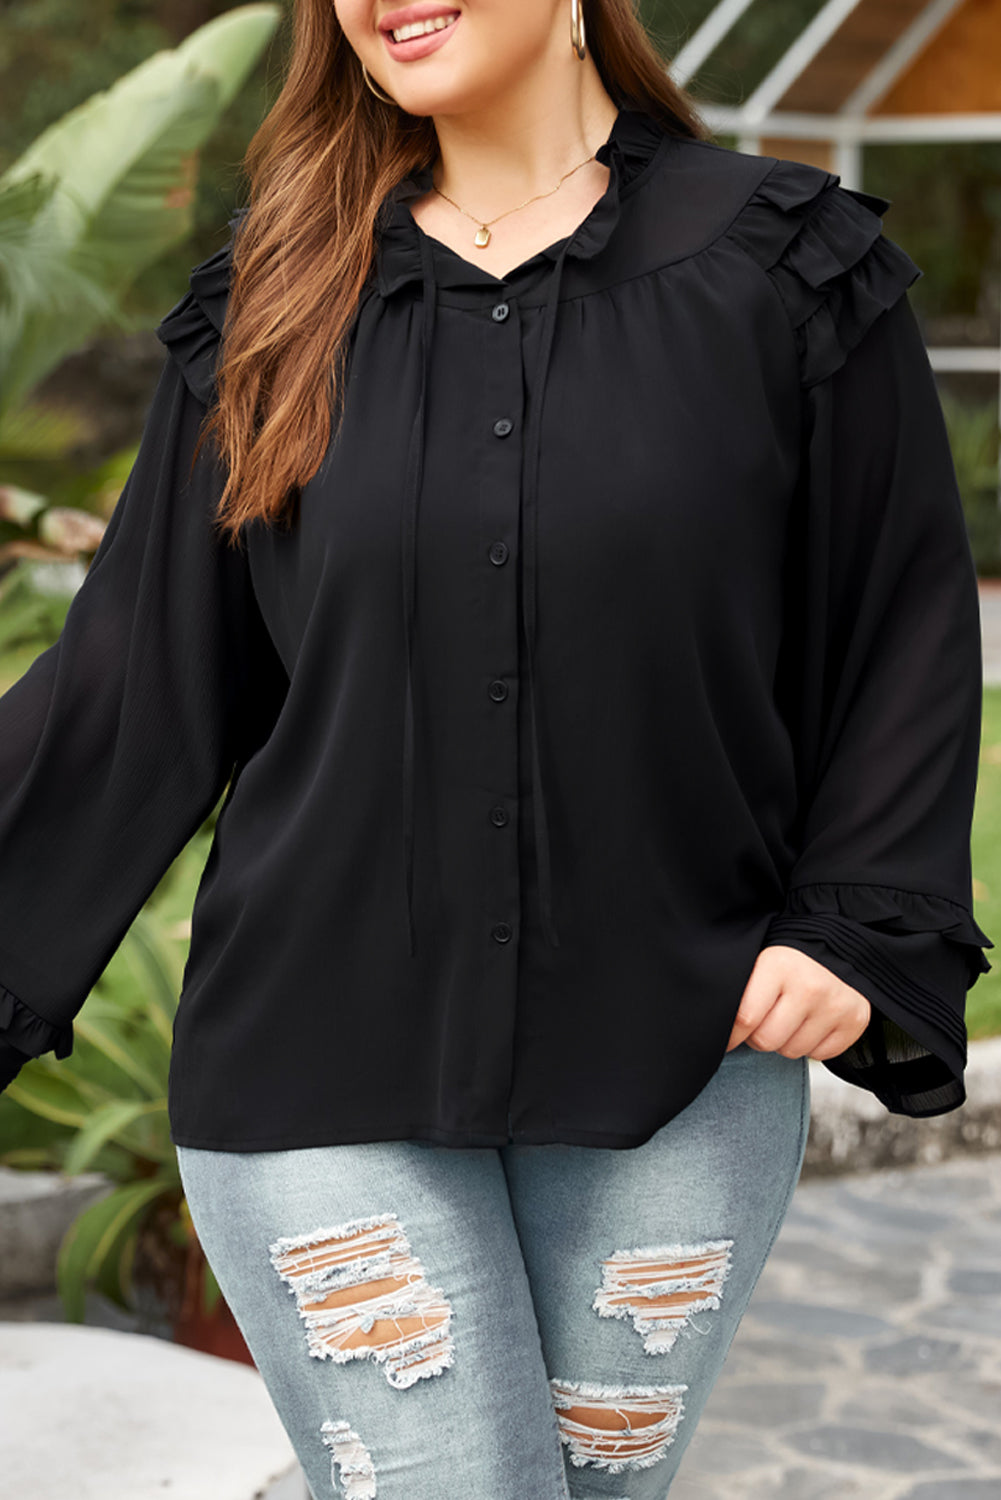 Črna večplastna bluza z naborki in gumbi velike velikosti